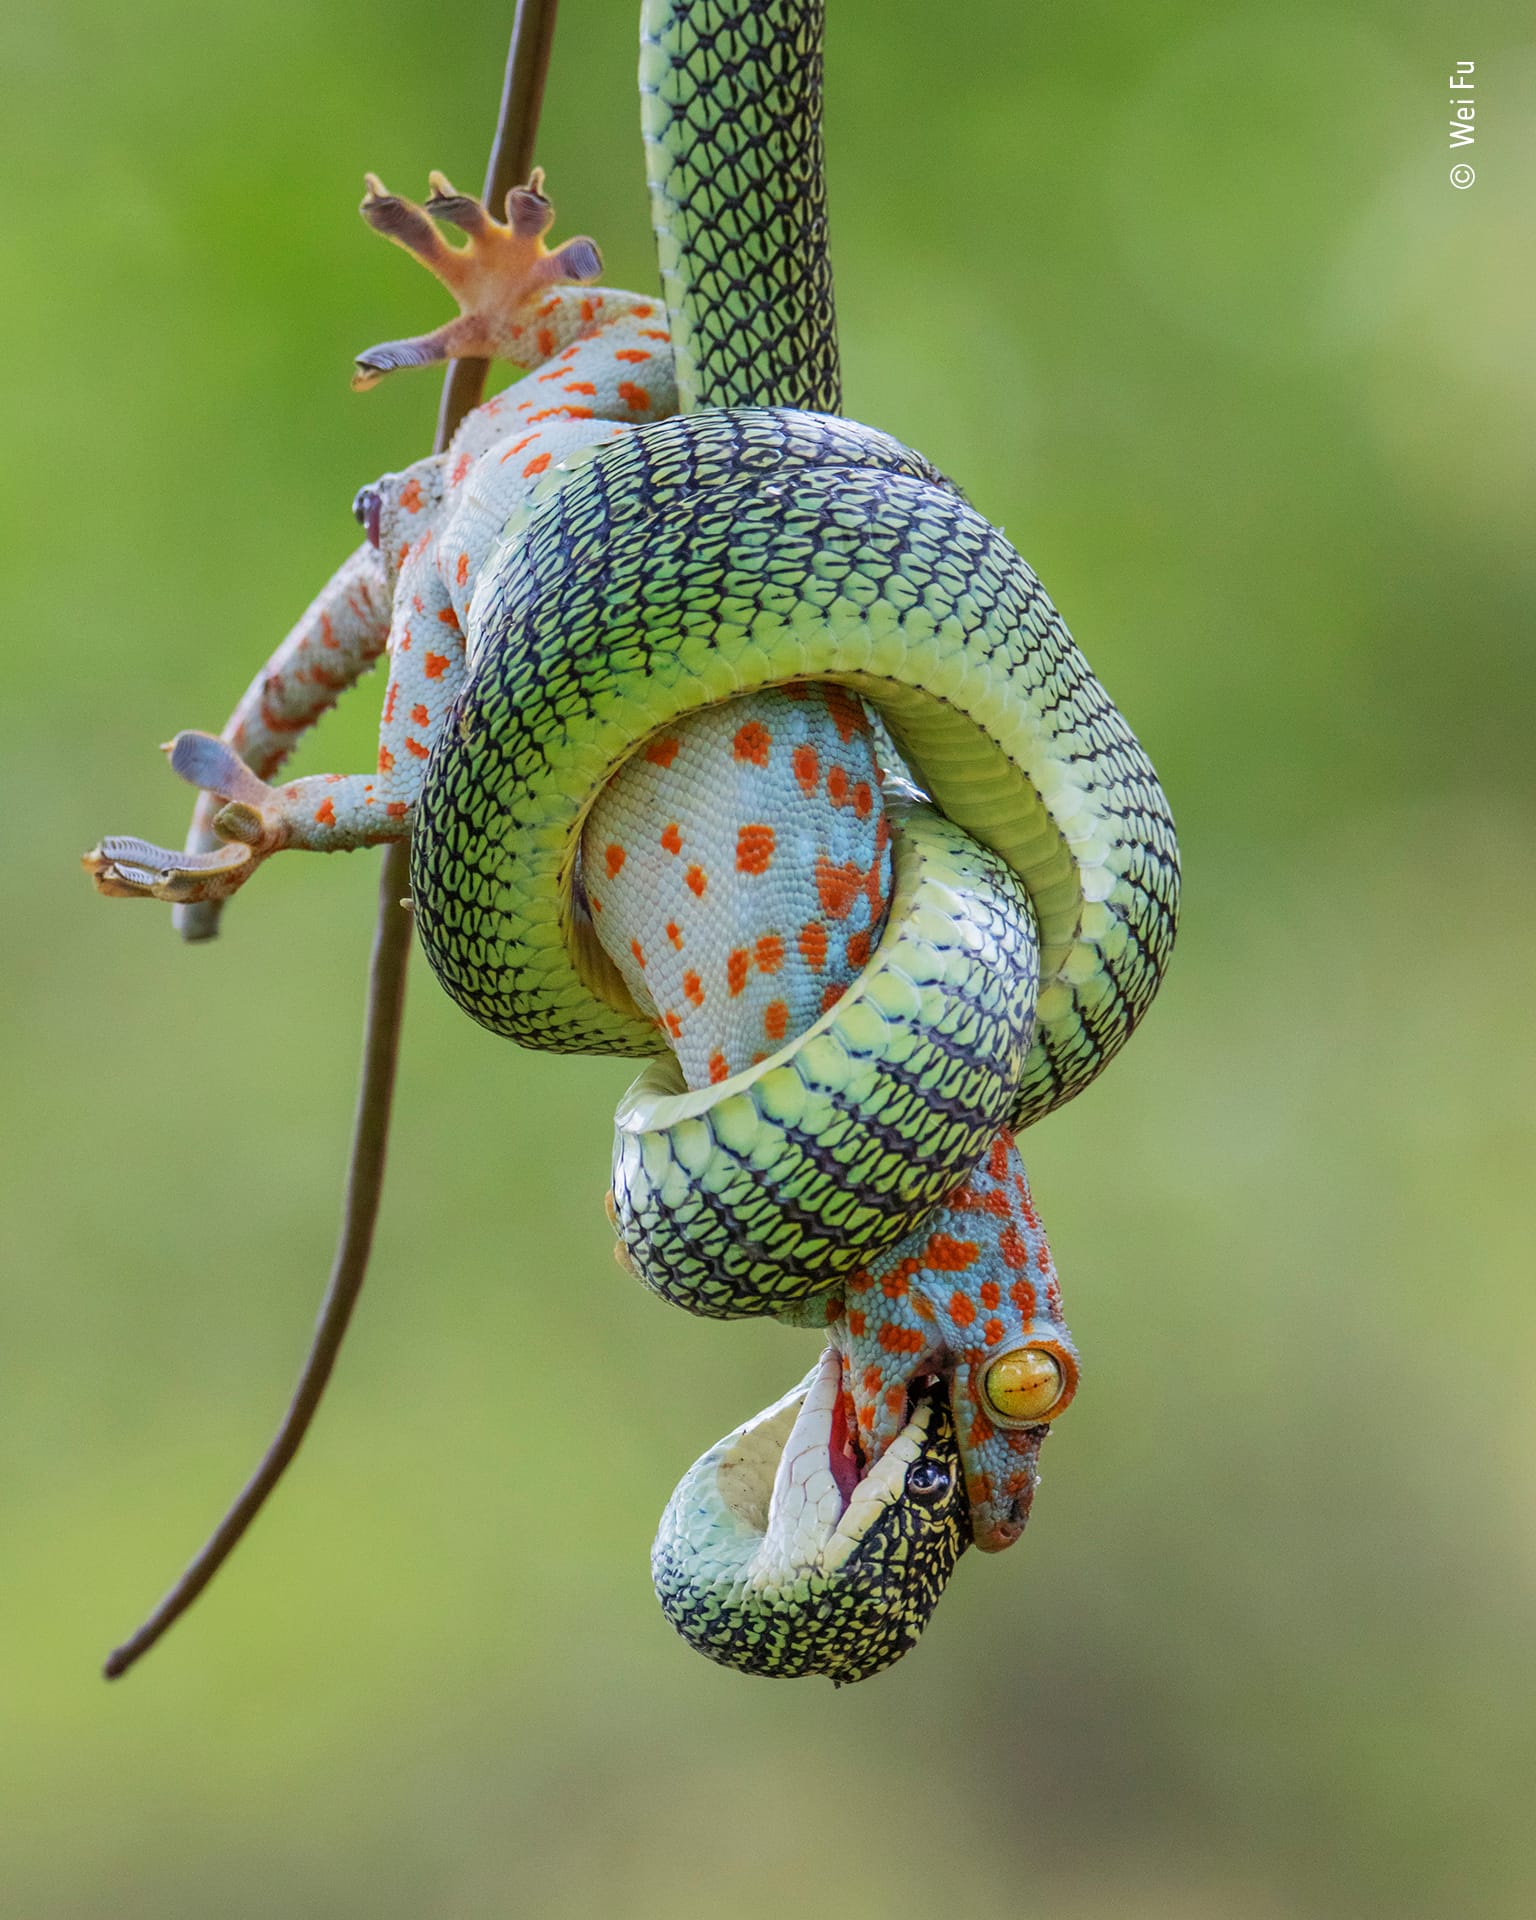 Ein Tokeh-Gecko startete einen letzten Verteidigungsversuch, nachdem er von einer Baumschlange geschnappt wurde. Die Gecko-Art ist zwar für ihren kräftigen Kiefer bekannt, fiel jedoch nach einiger Zeit der Schlange zum Opfer, berichtet der Fotograf dieser Szene, Wei Fu.